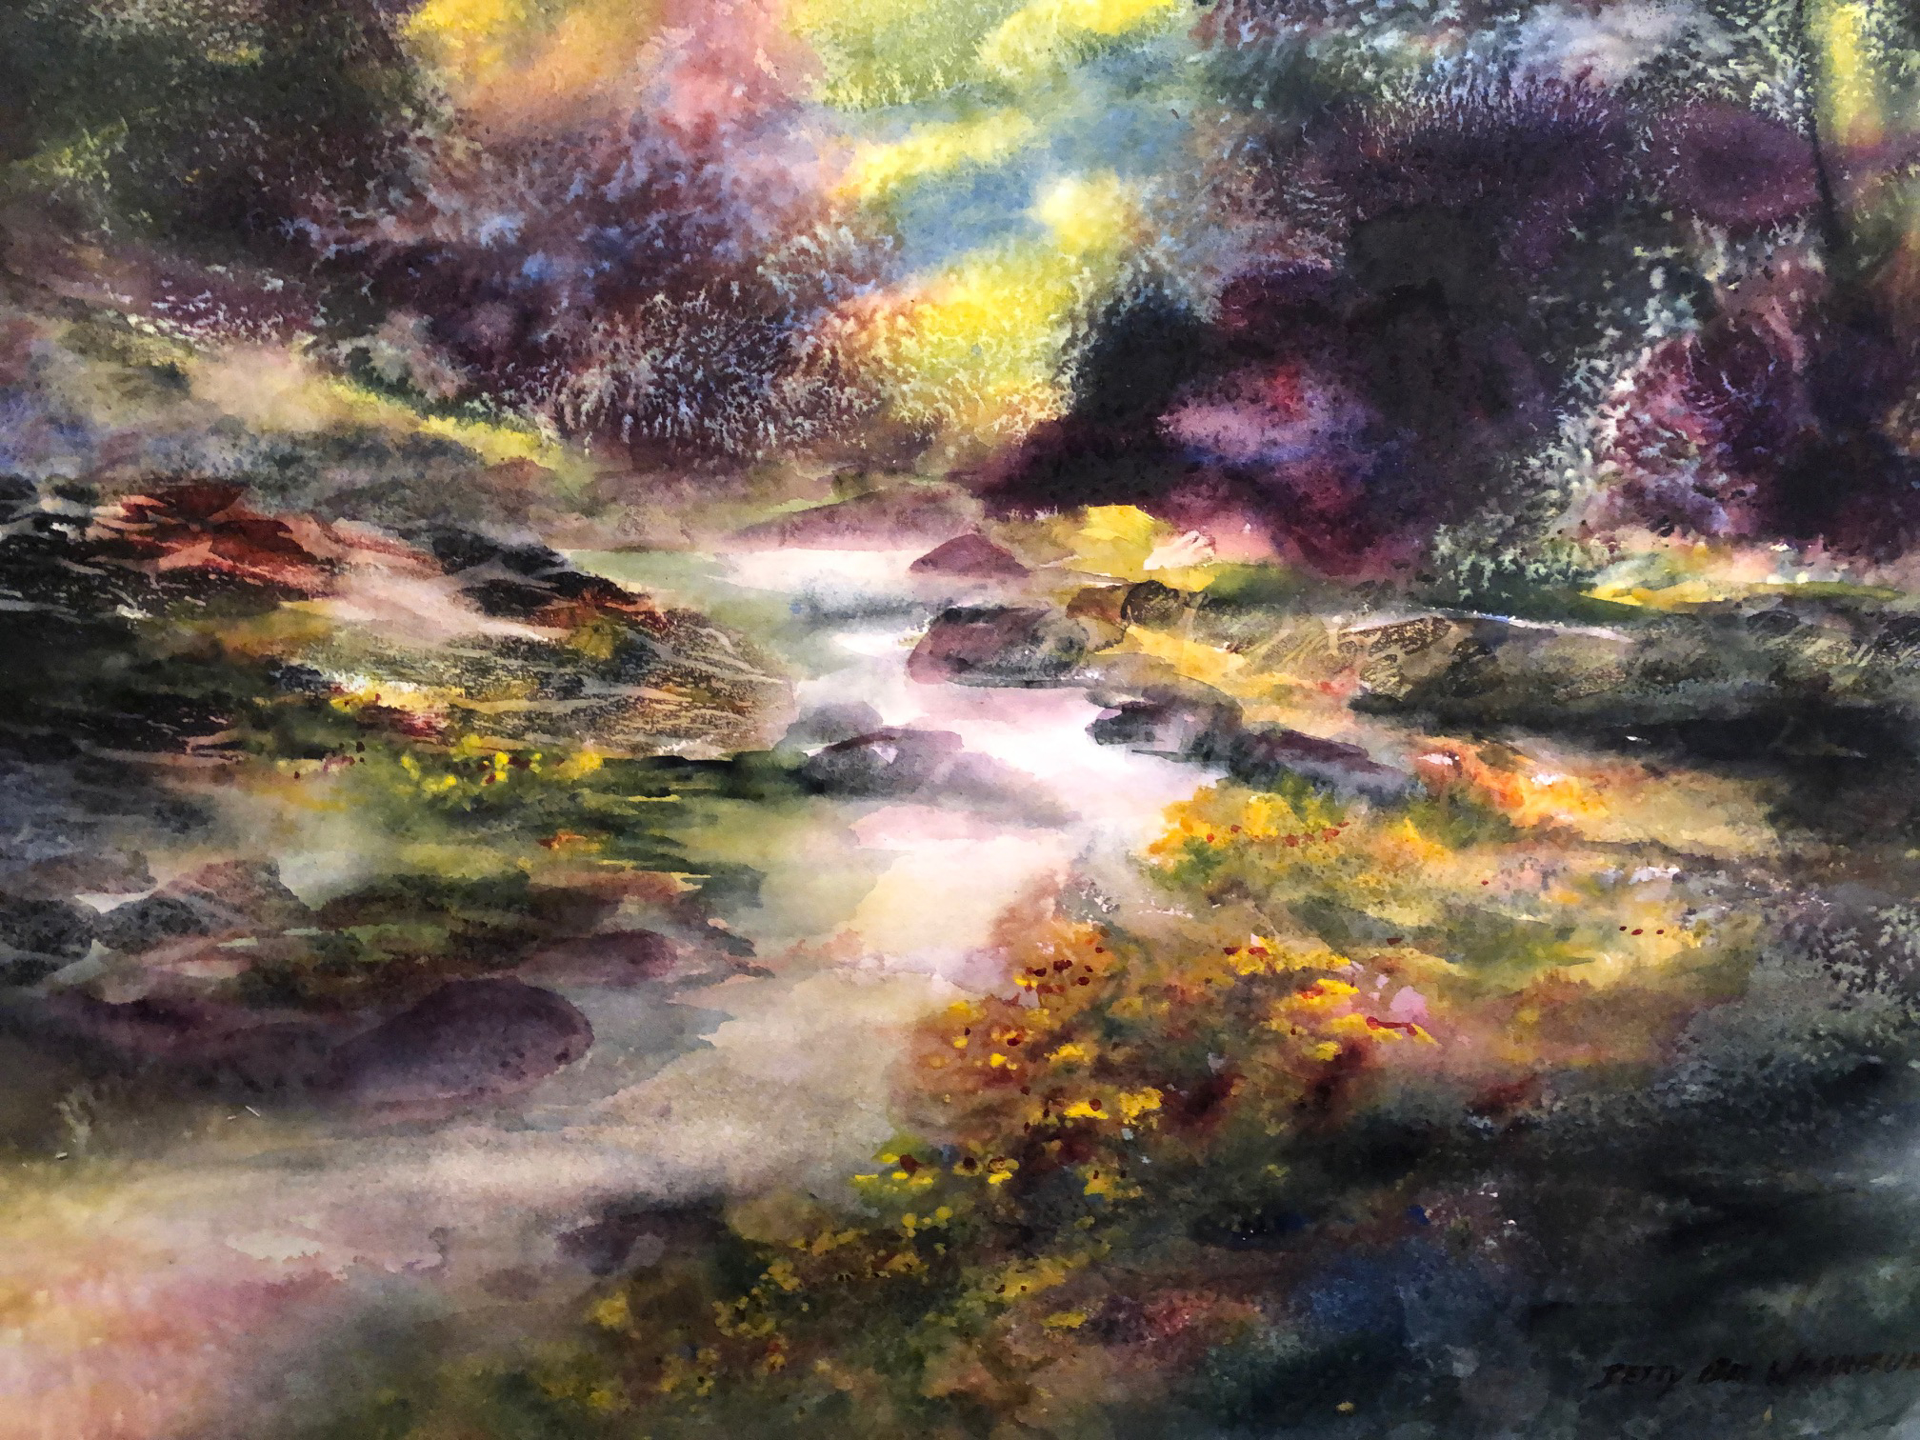 Marsh Marigolds by Betty Bea Washburn